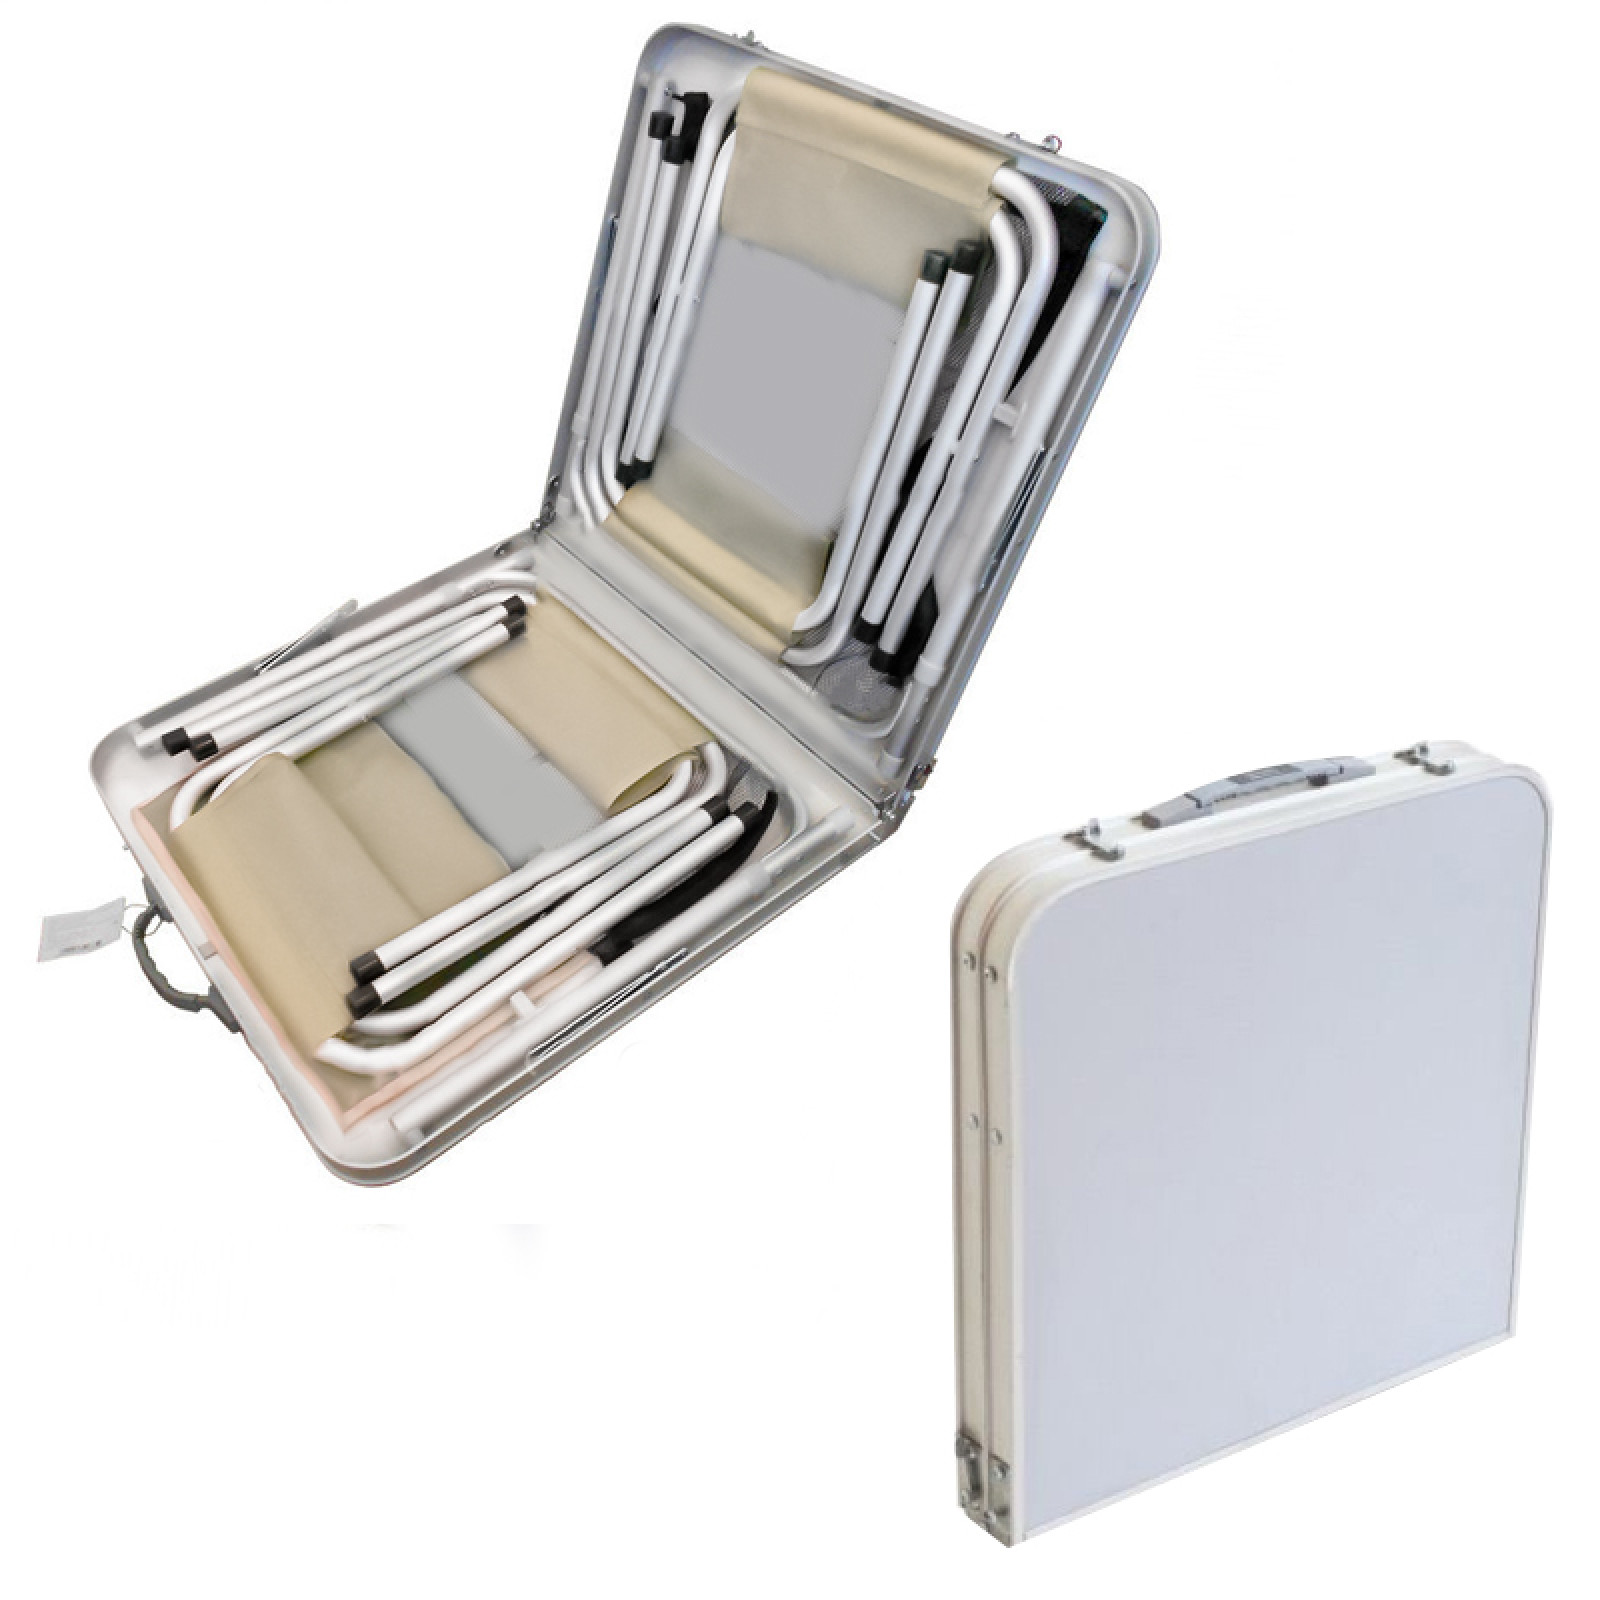 Складной столик чемодан для пикника, кемпинга 120 на 60 см с 4-мя стульями FOLDING TABLE светлый 149552